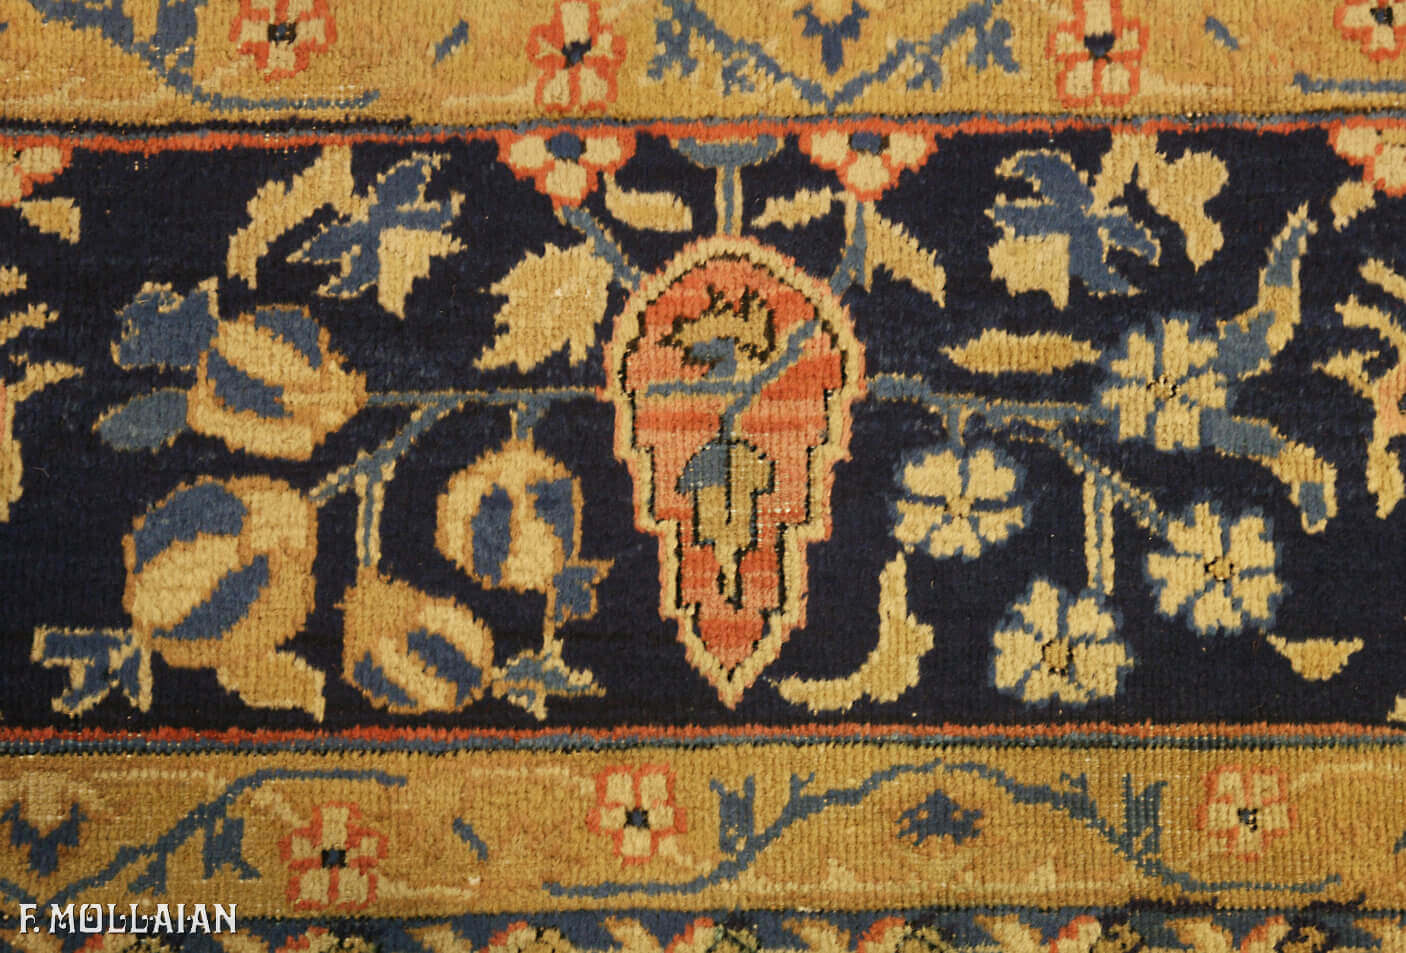 Tappeto Molto Grande Persiano Antico Tabriz n°:85607770